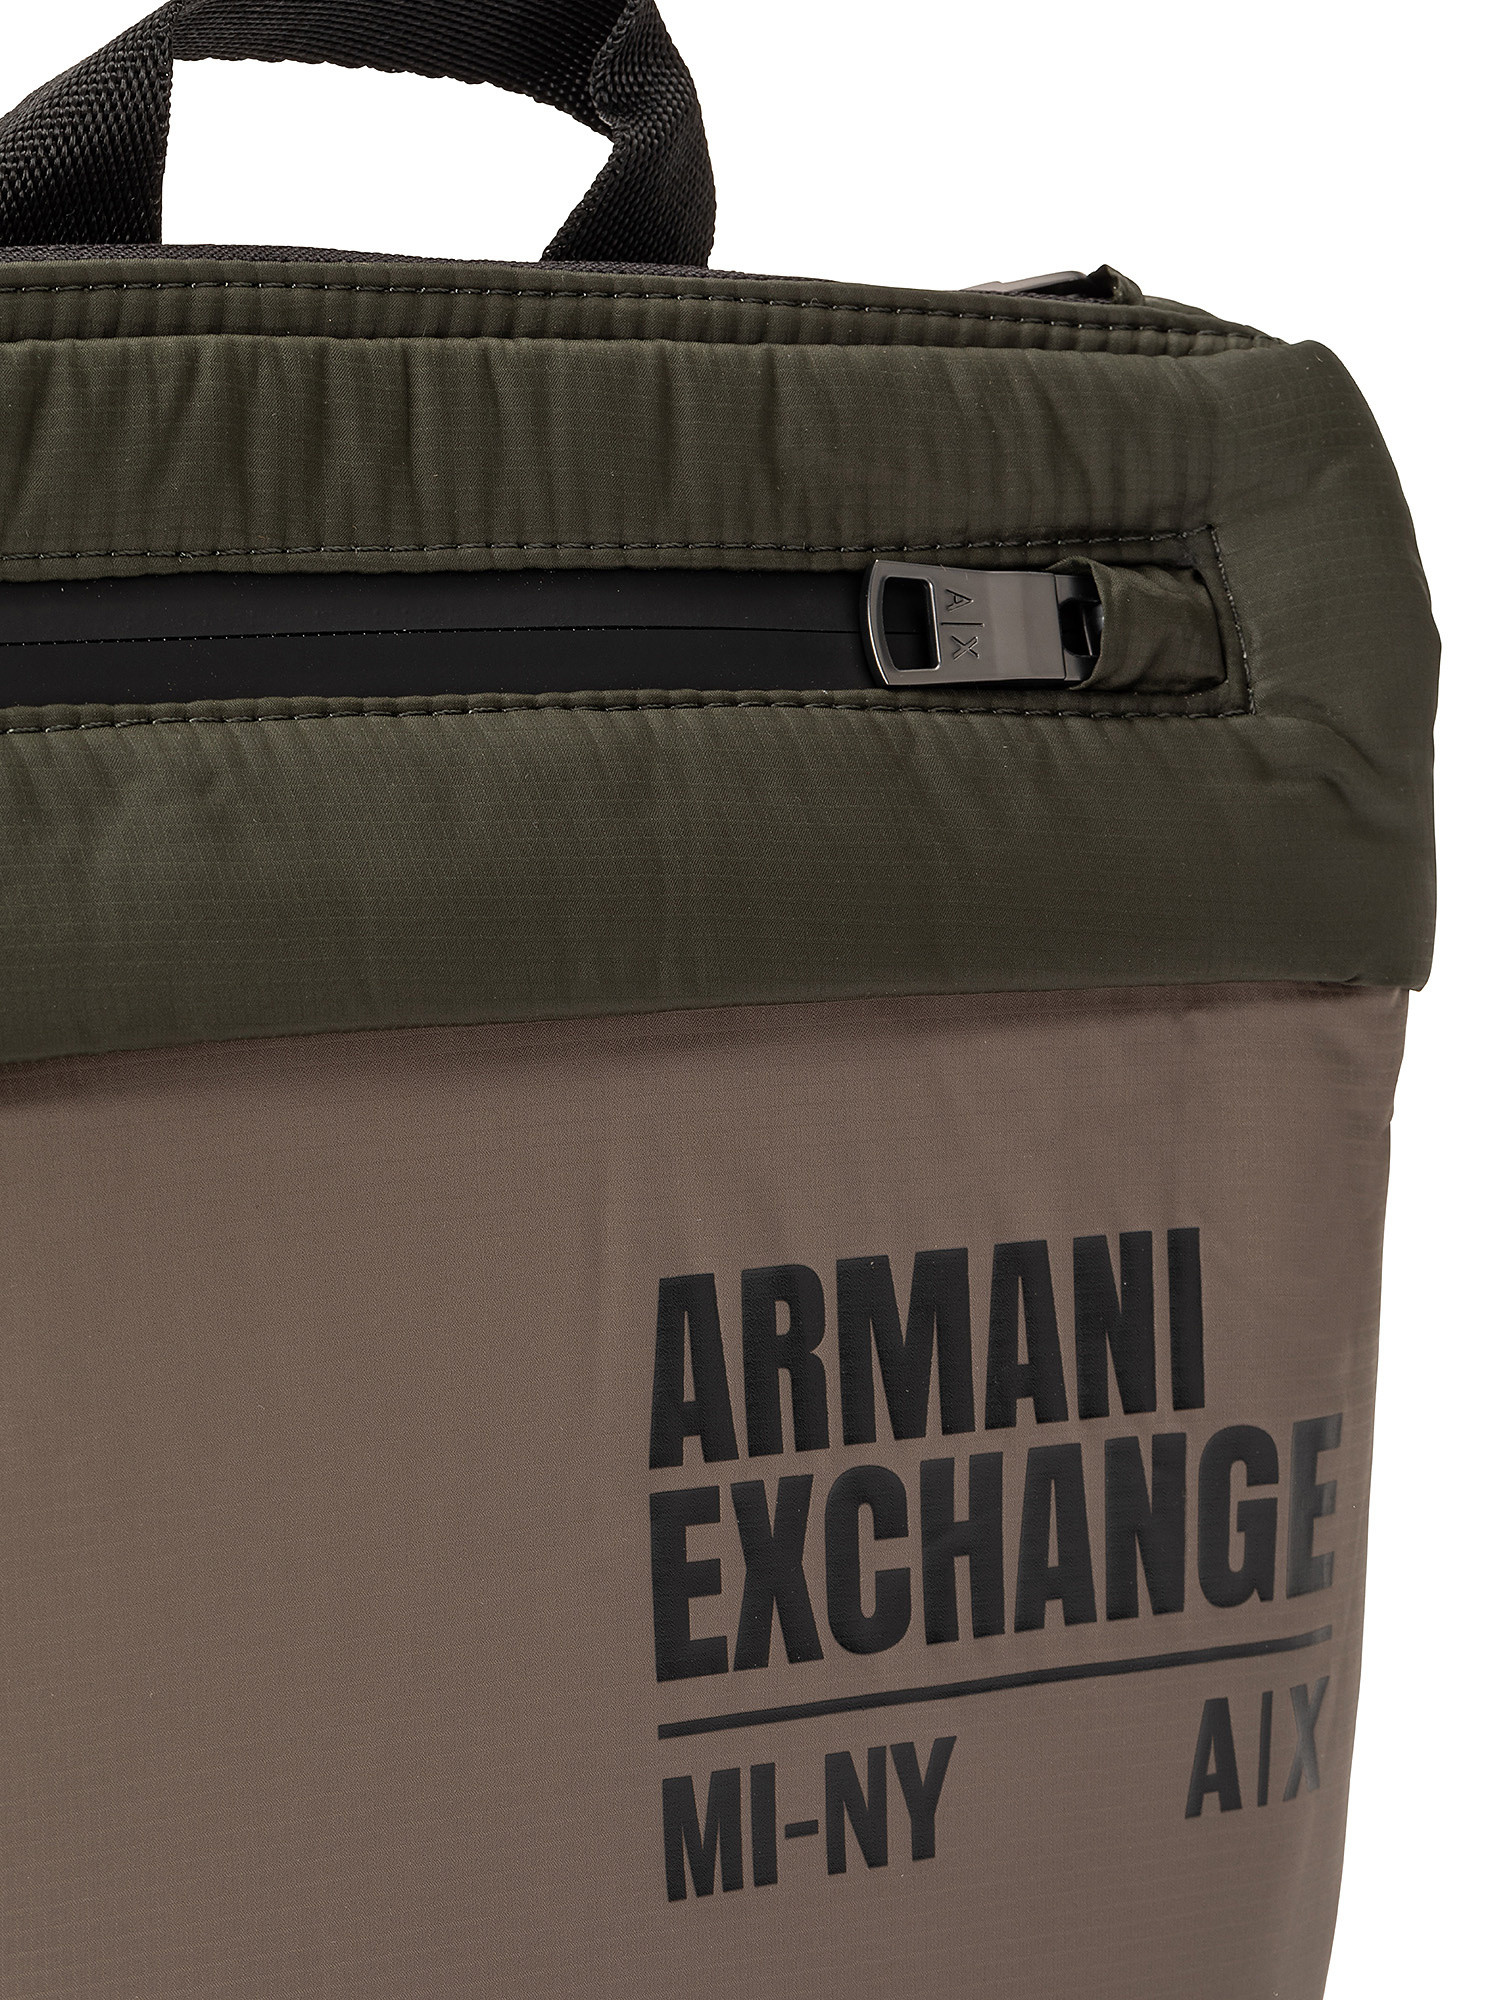 Armani Exchange - Borsa a tracolla in tessuto tecnico riciclato, Verde scuro, large image number 2